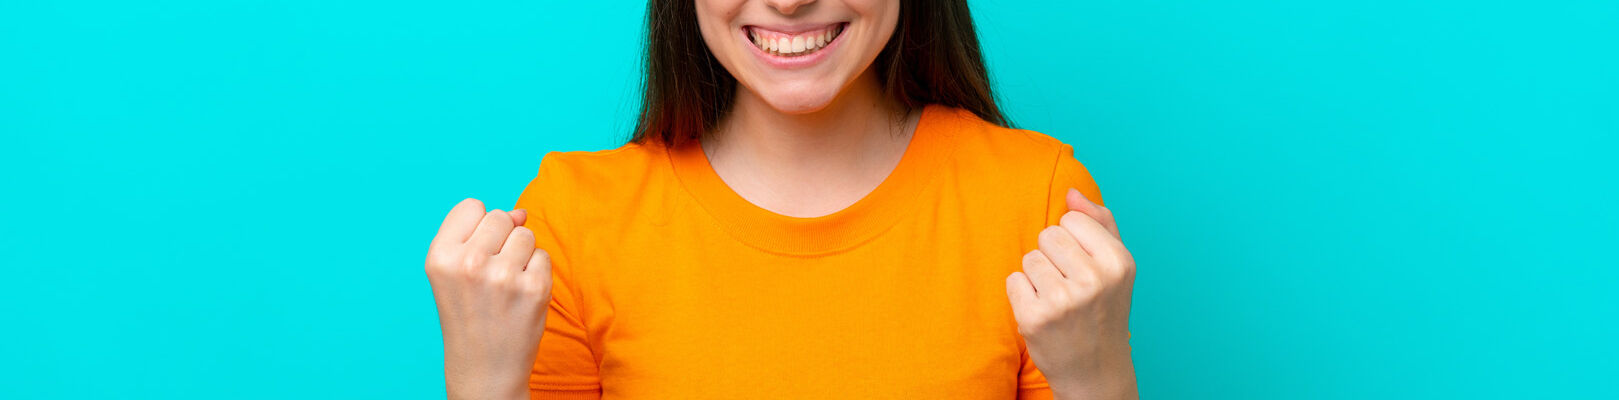 Une femme avec un teeshirt orange sert les points en souriant.